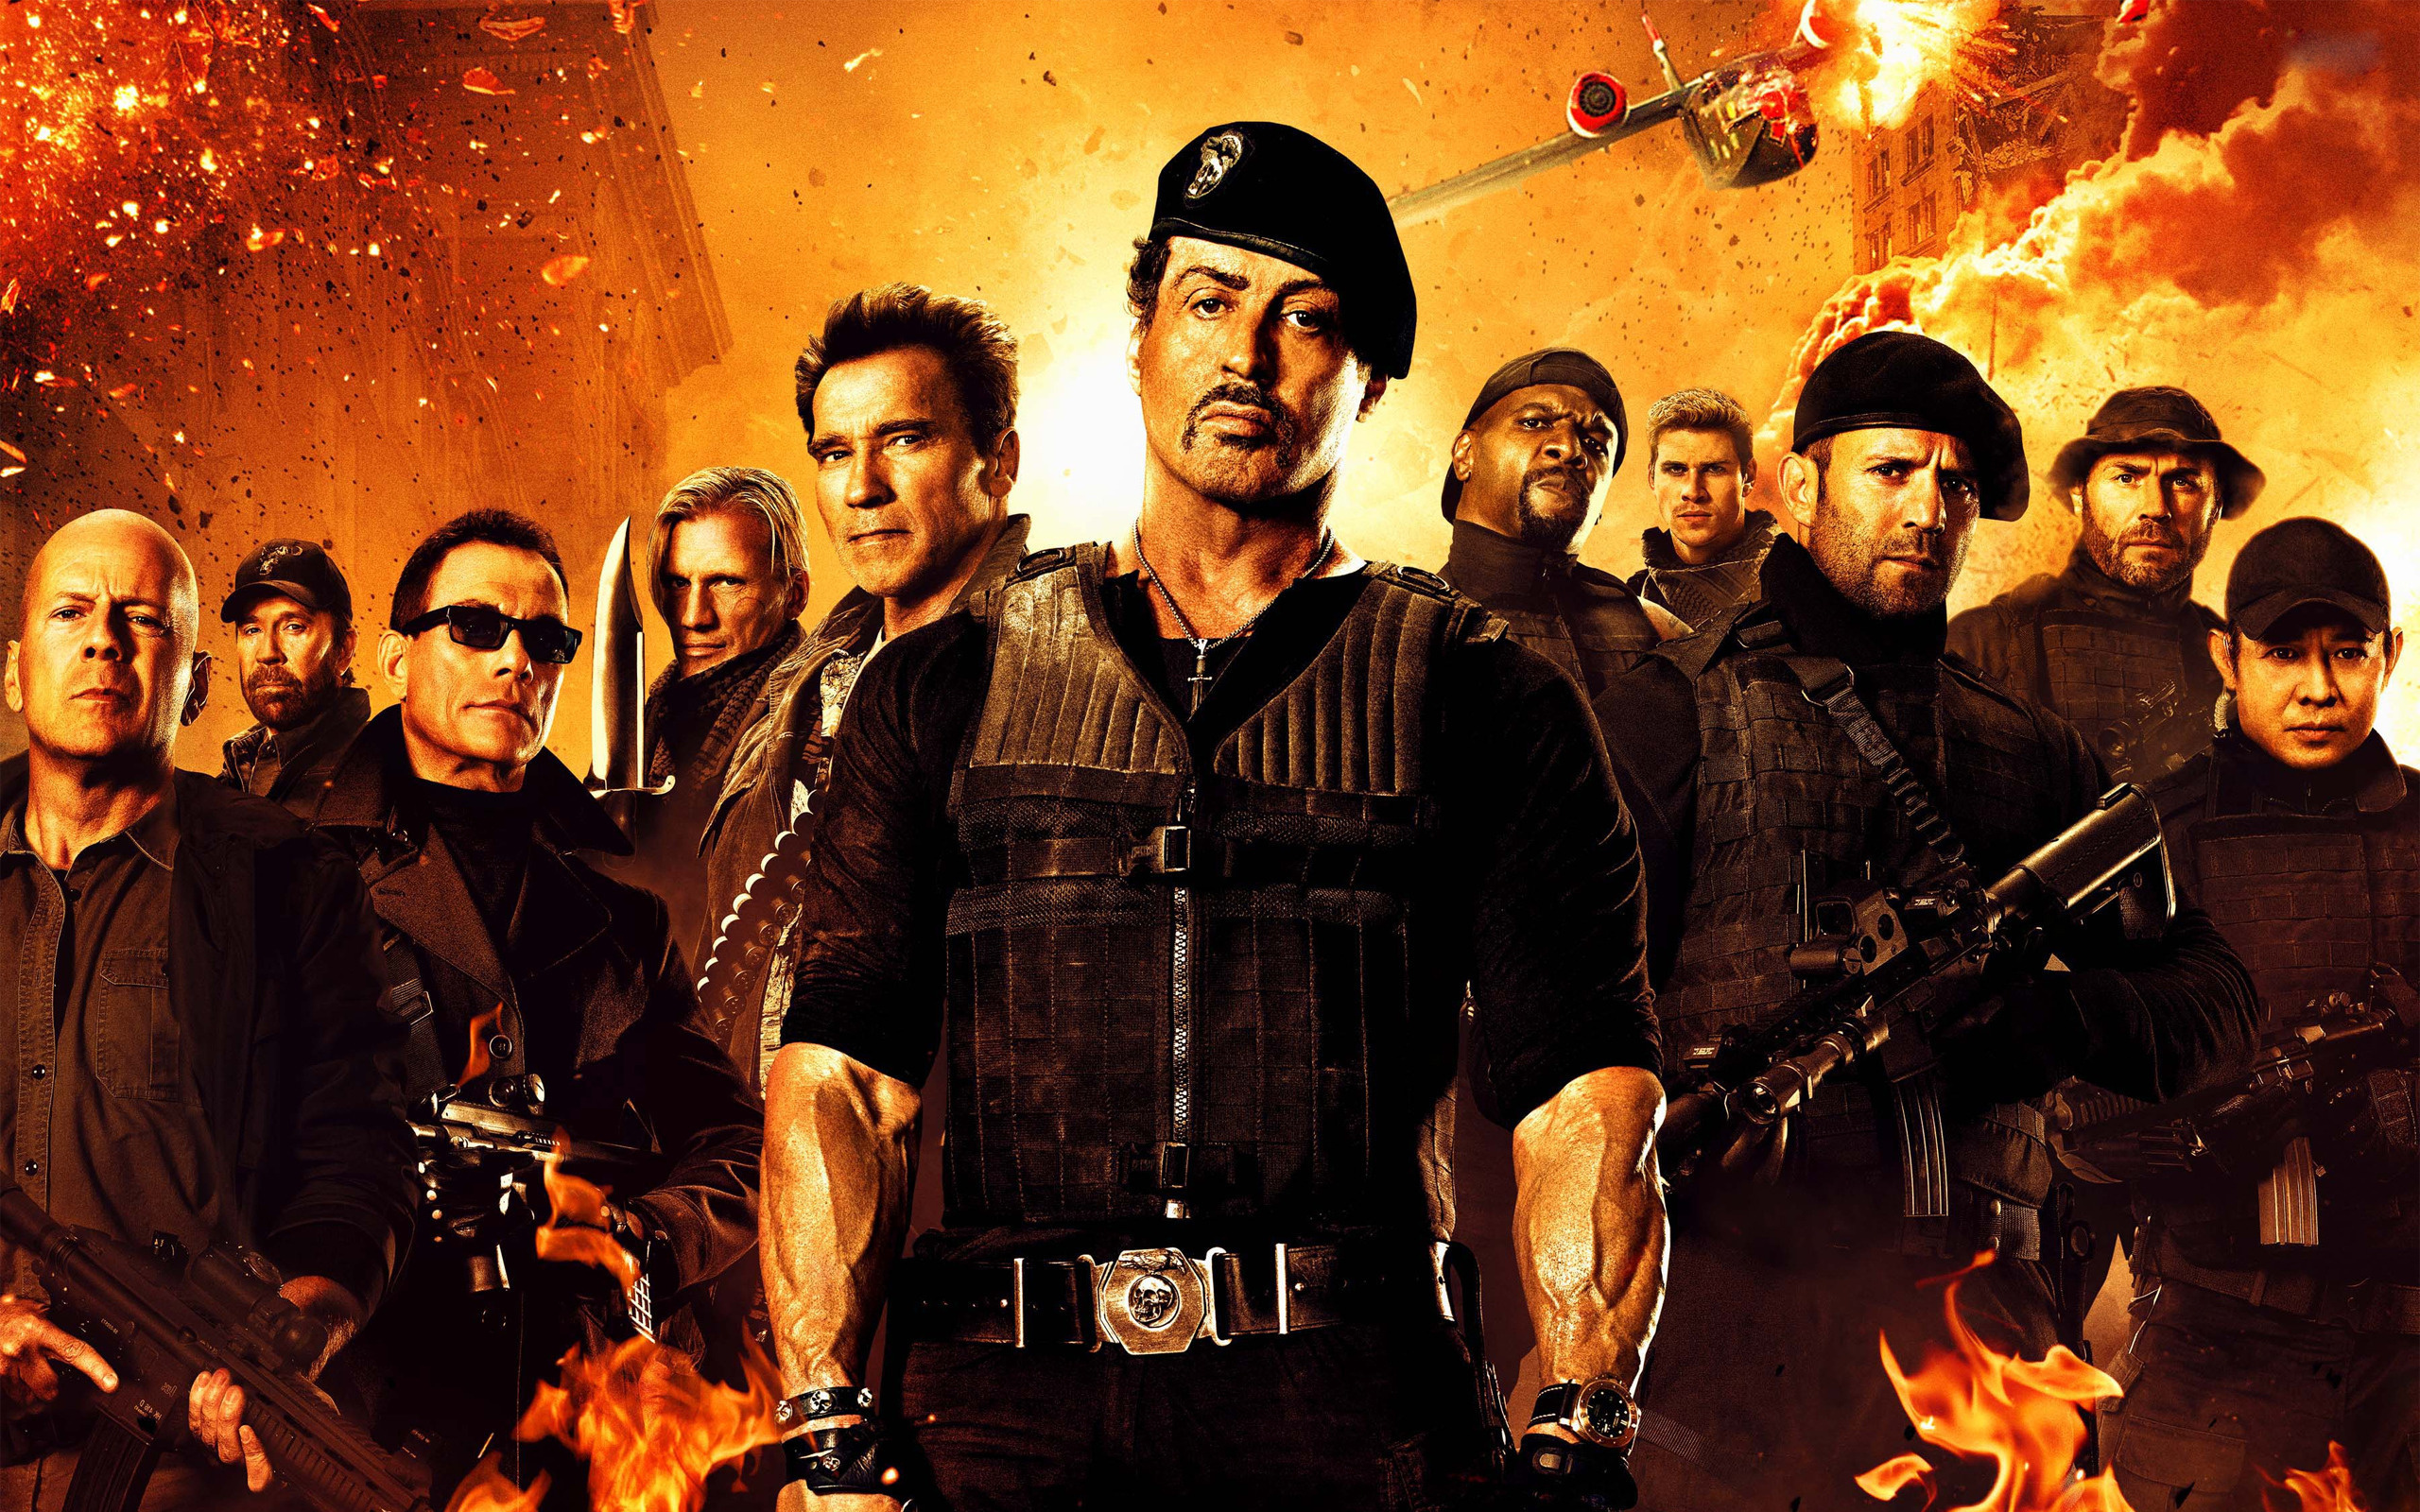 Chuck Norris, Jason Statham, Dolph Lundgren, Liam Hemsworth, Action movie wallpaper, 2560x1600 HD Desktop